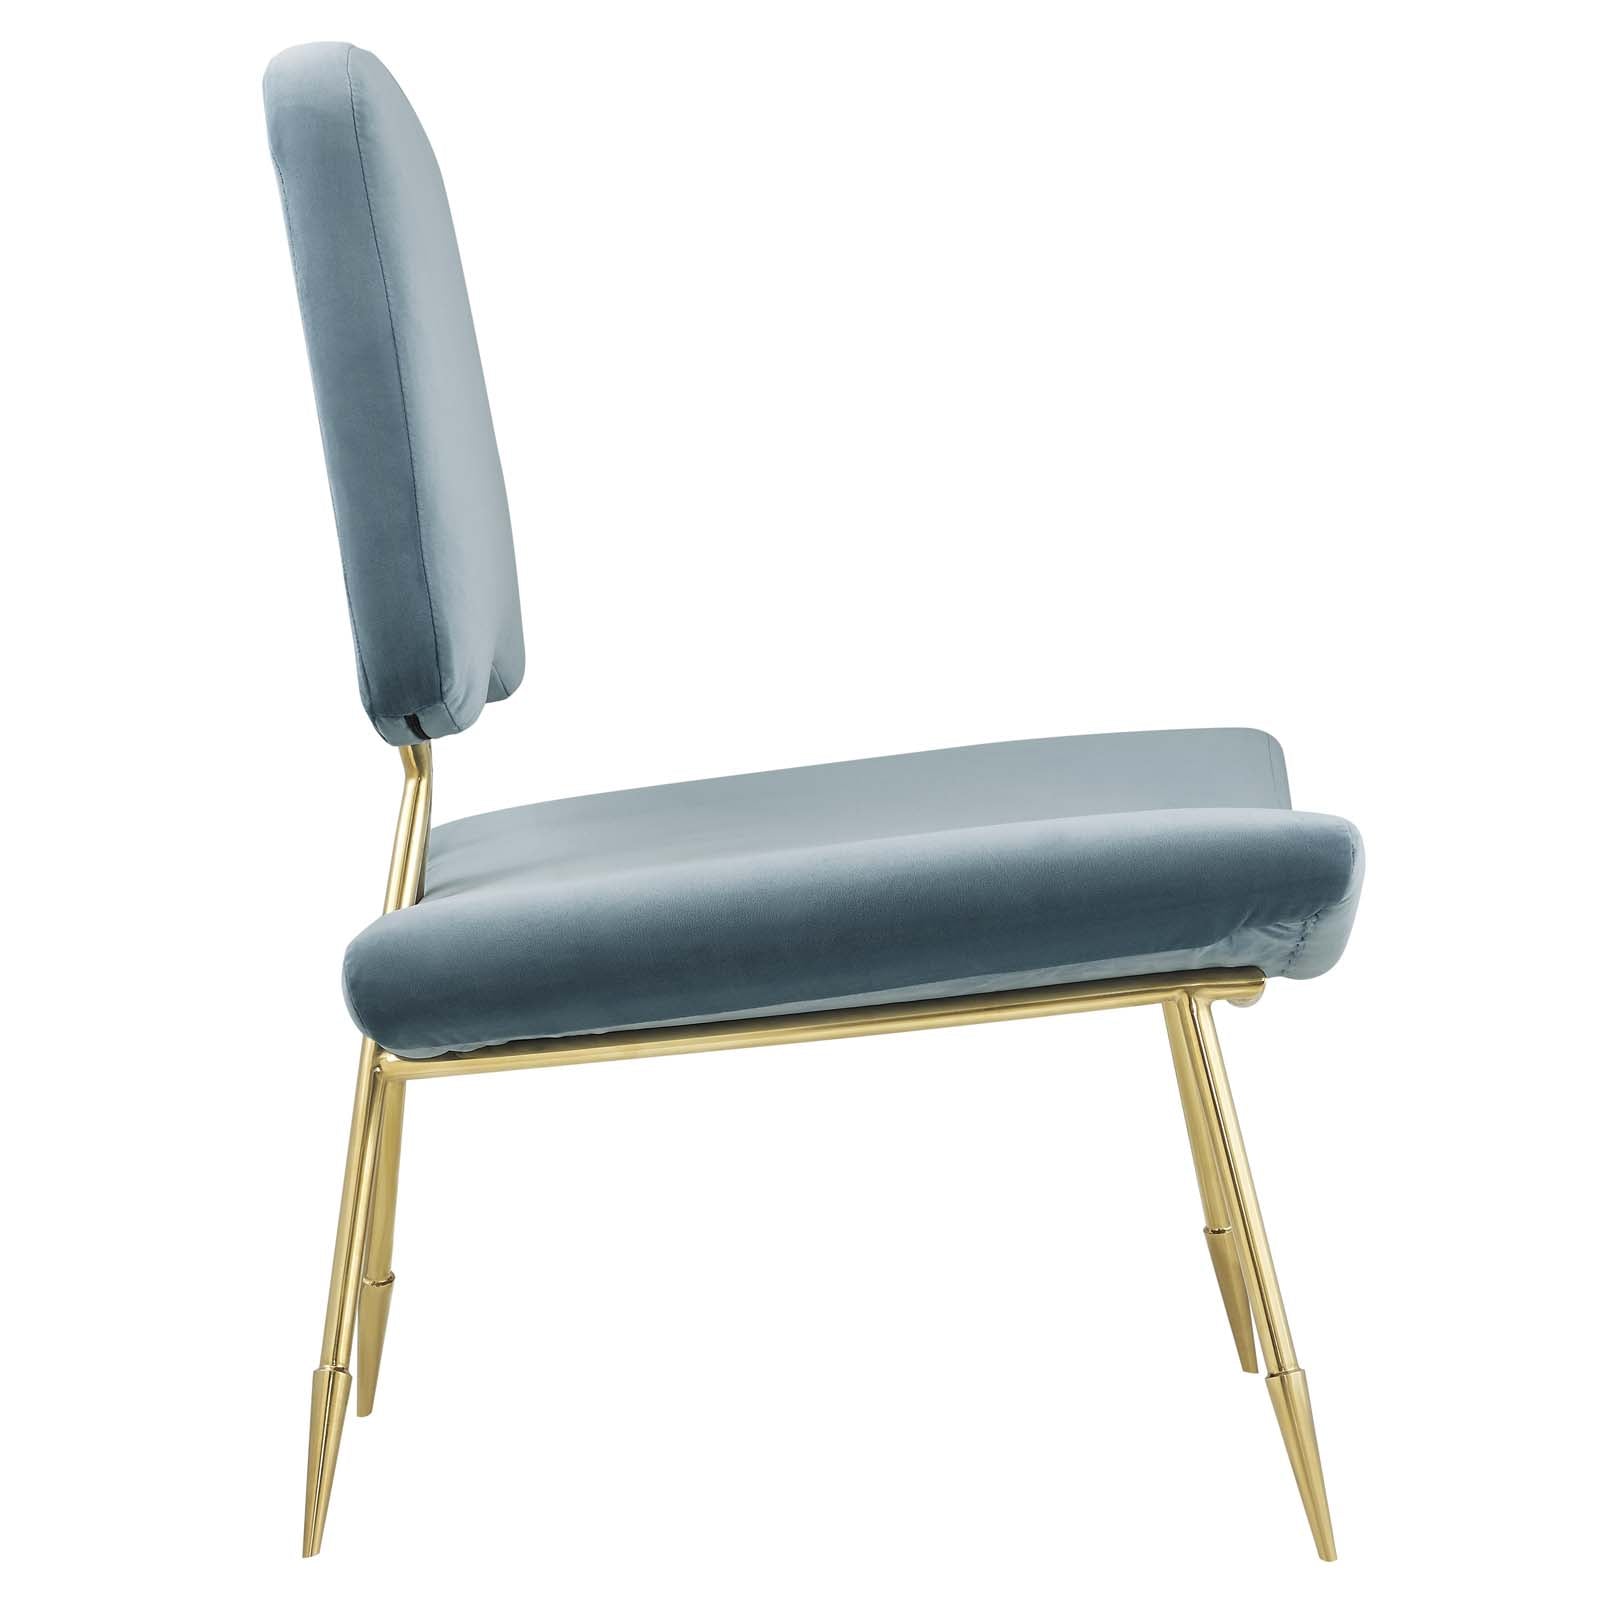 Ponder Performance Velvet Lounge Chair - East Shore Modern Home Furnishings